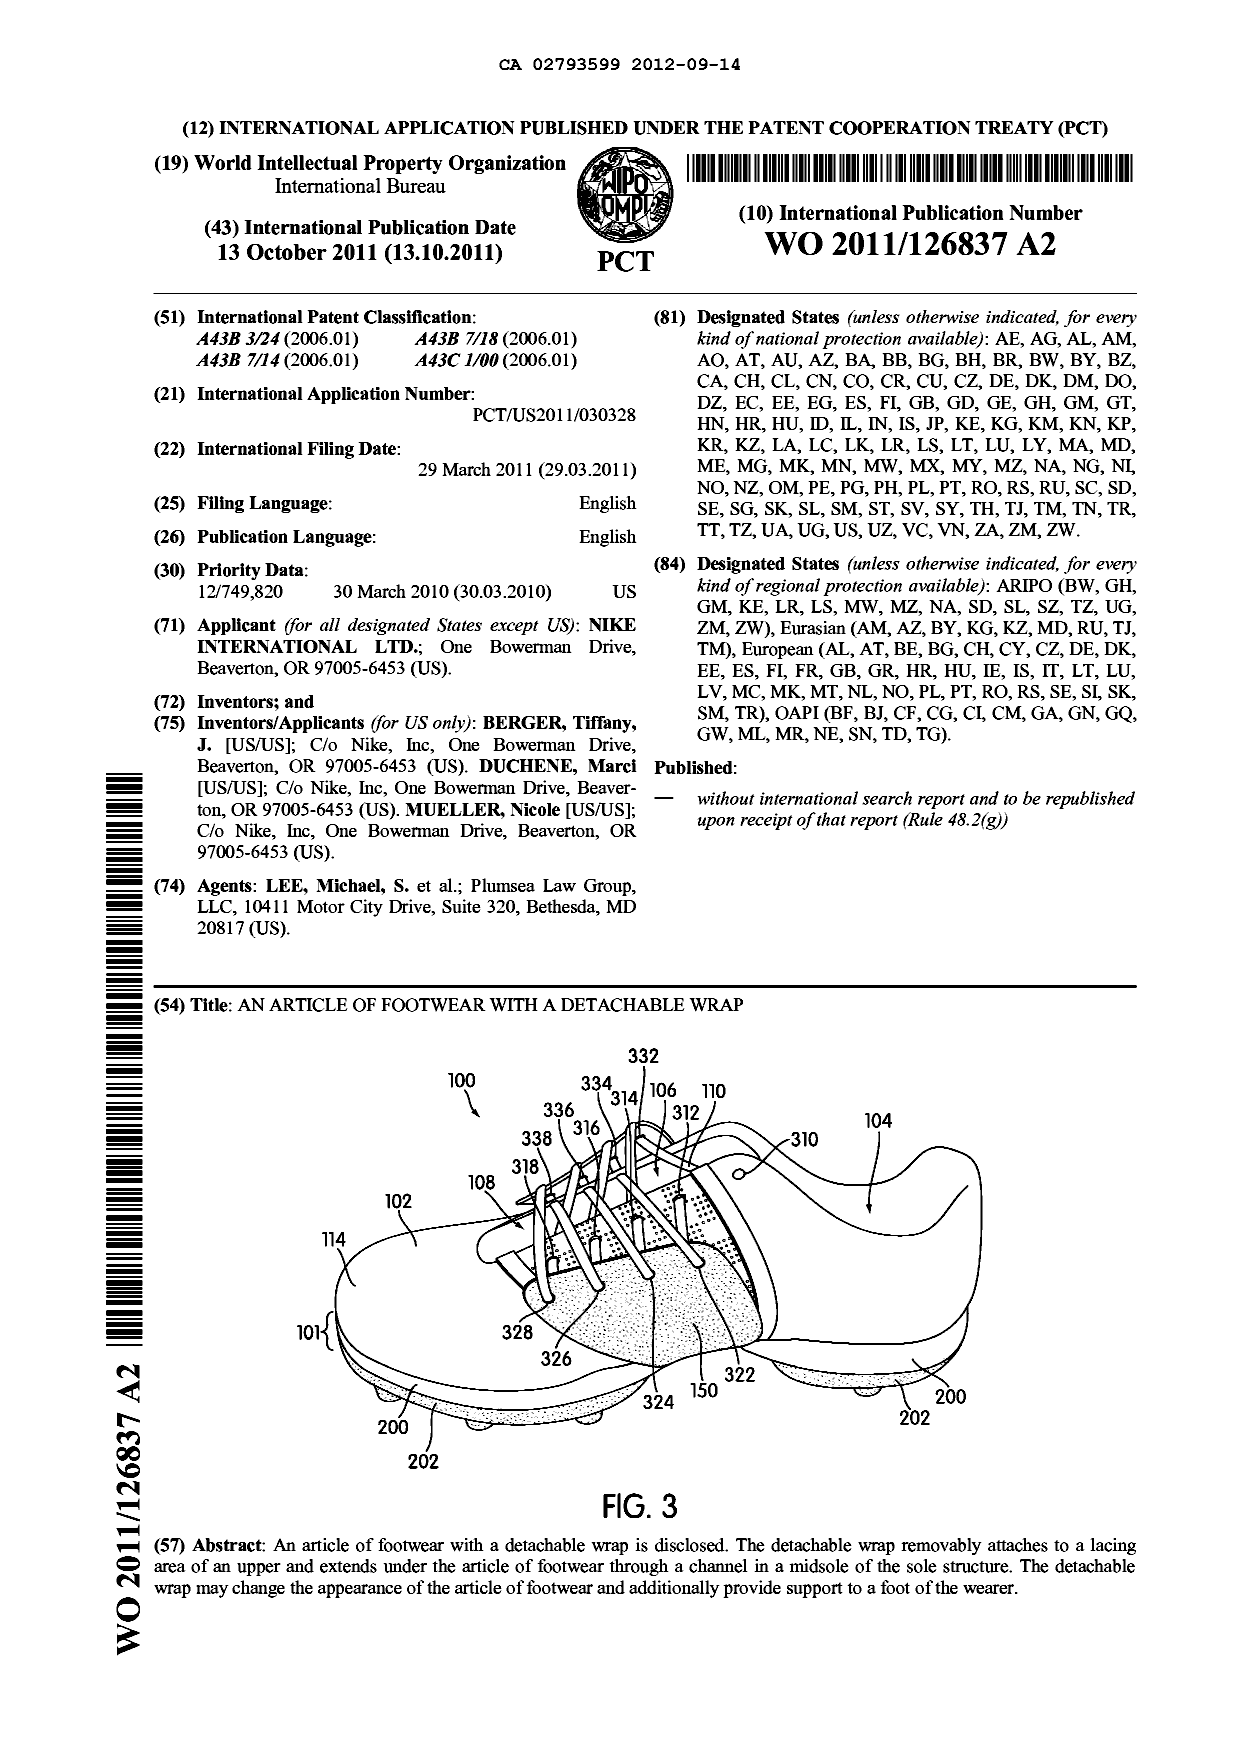 Document de brevet canadien 2793599. Abrégé 20120914. Image 1 de 1